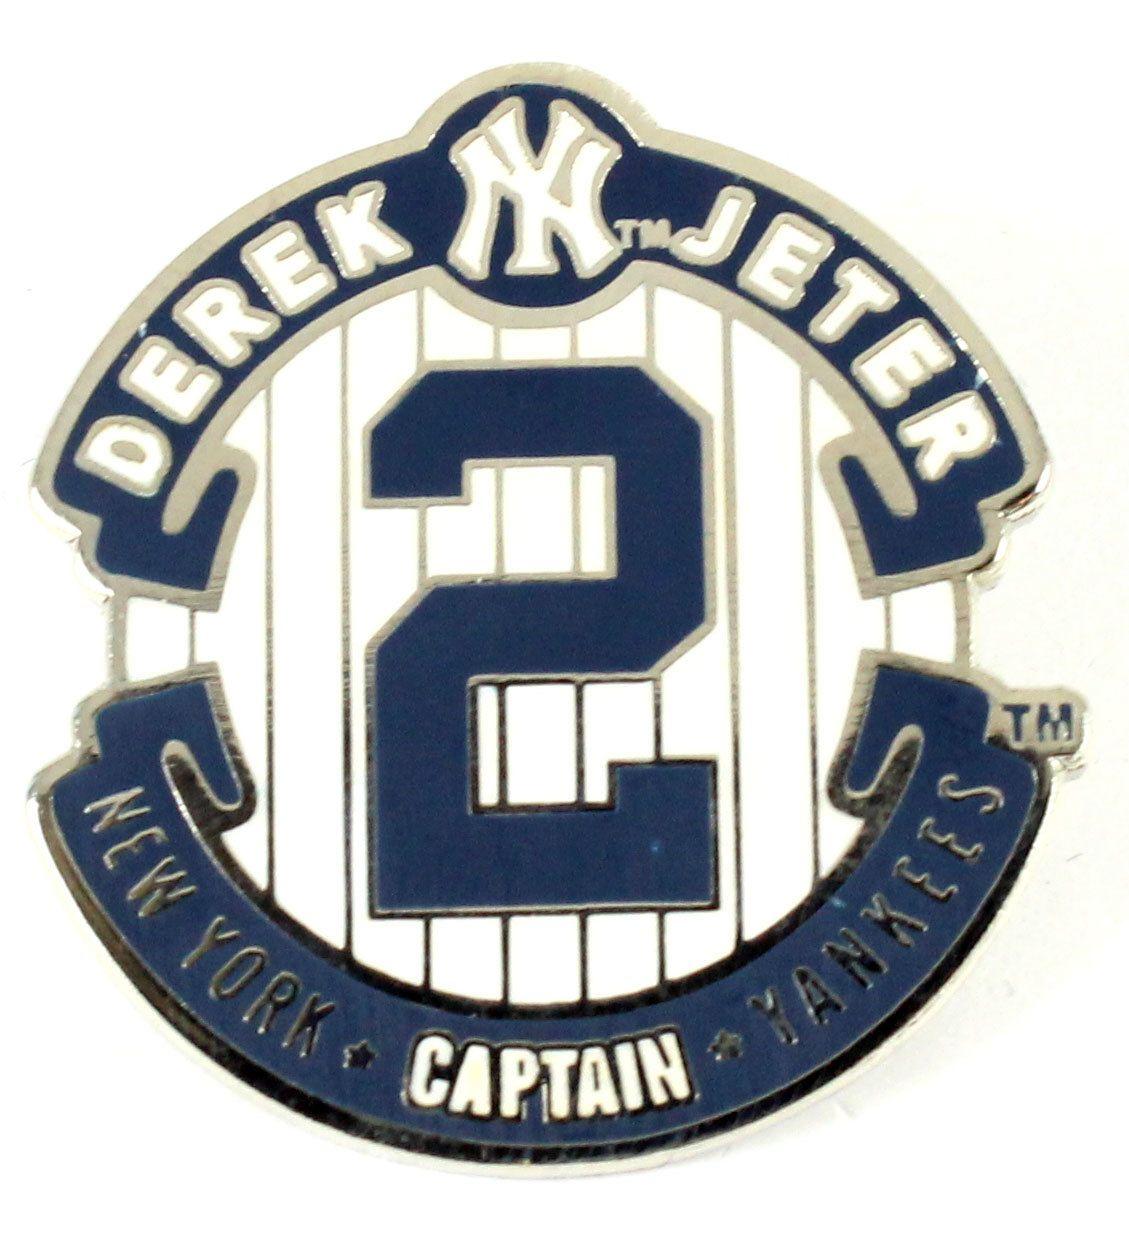 Derek Logo - Derek Jeter 2014 Retirement Logo Pin